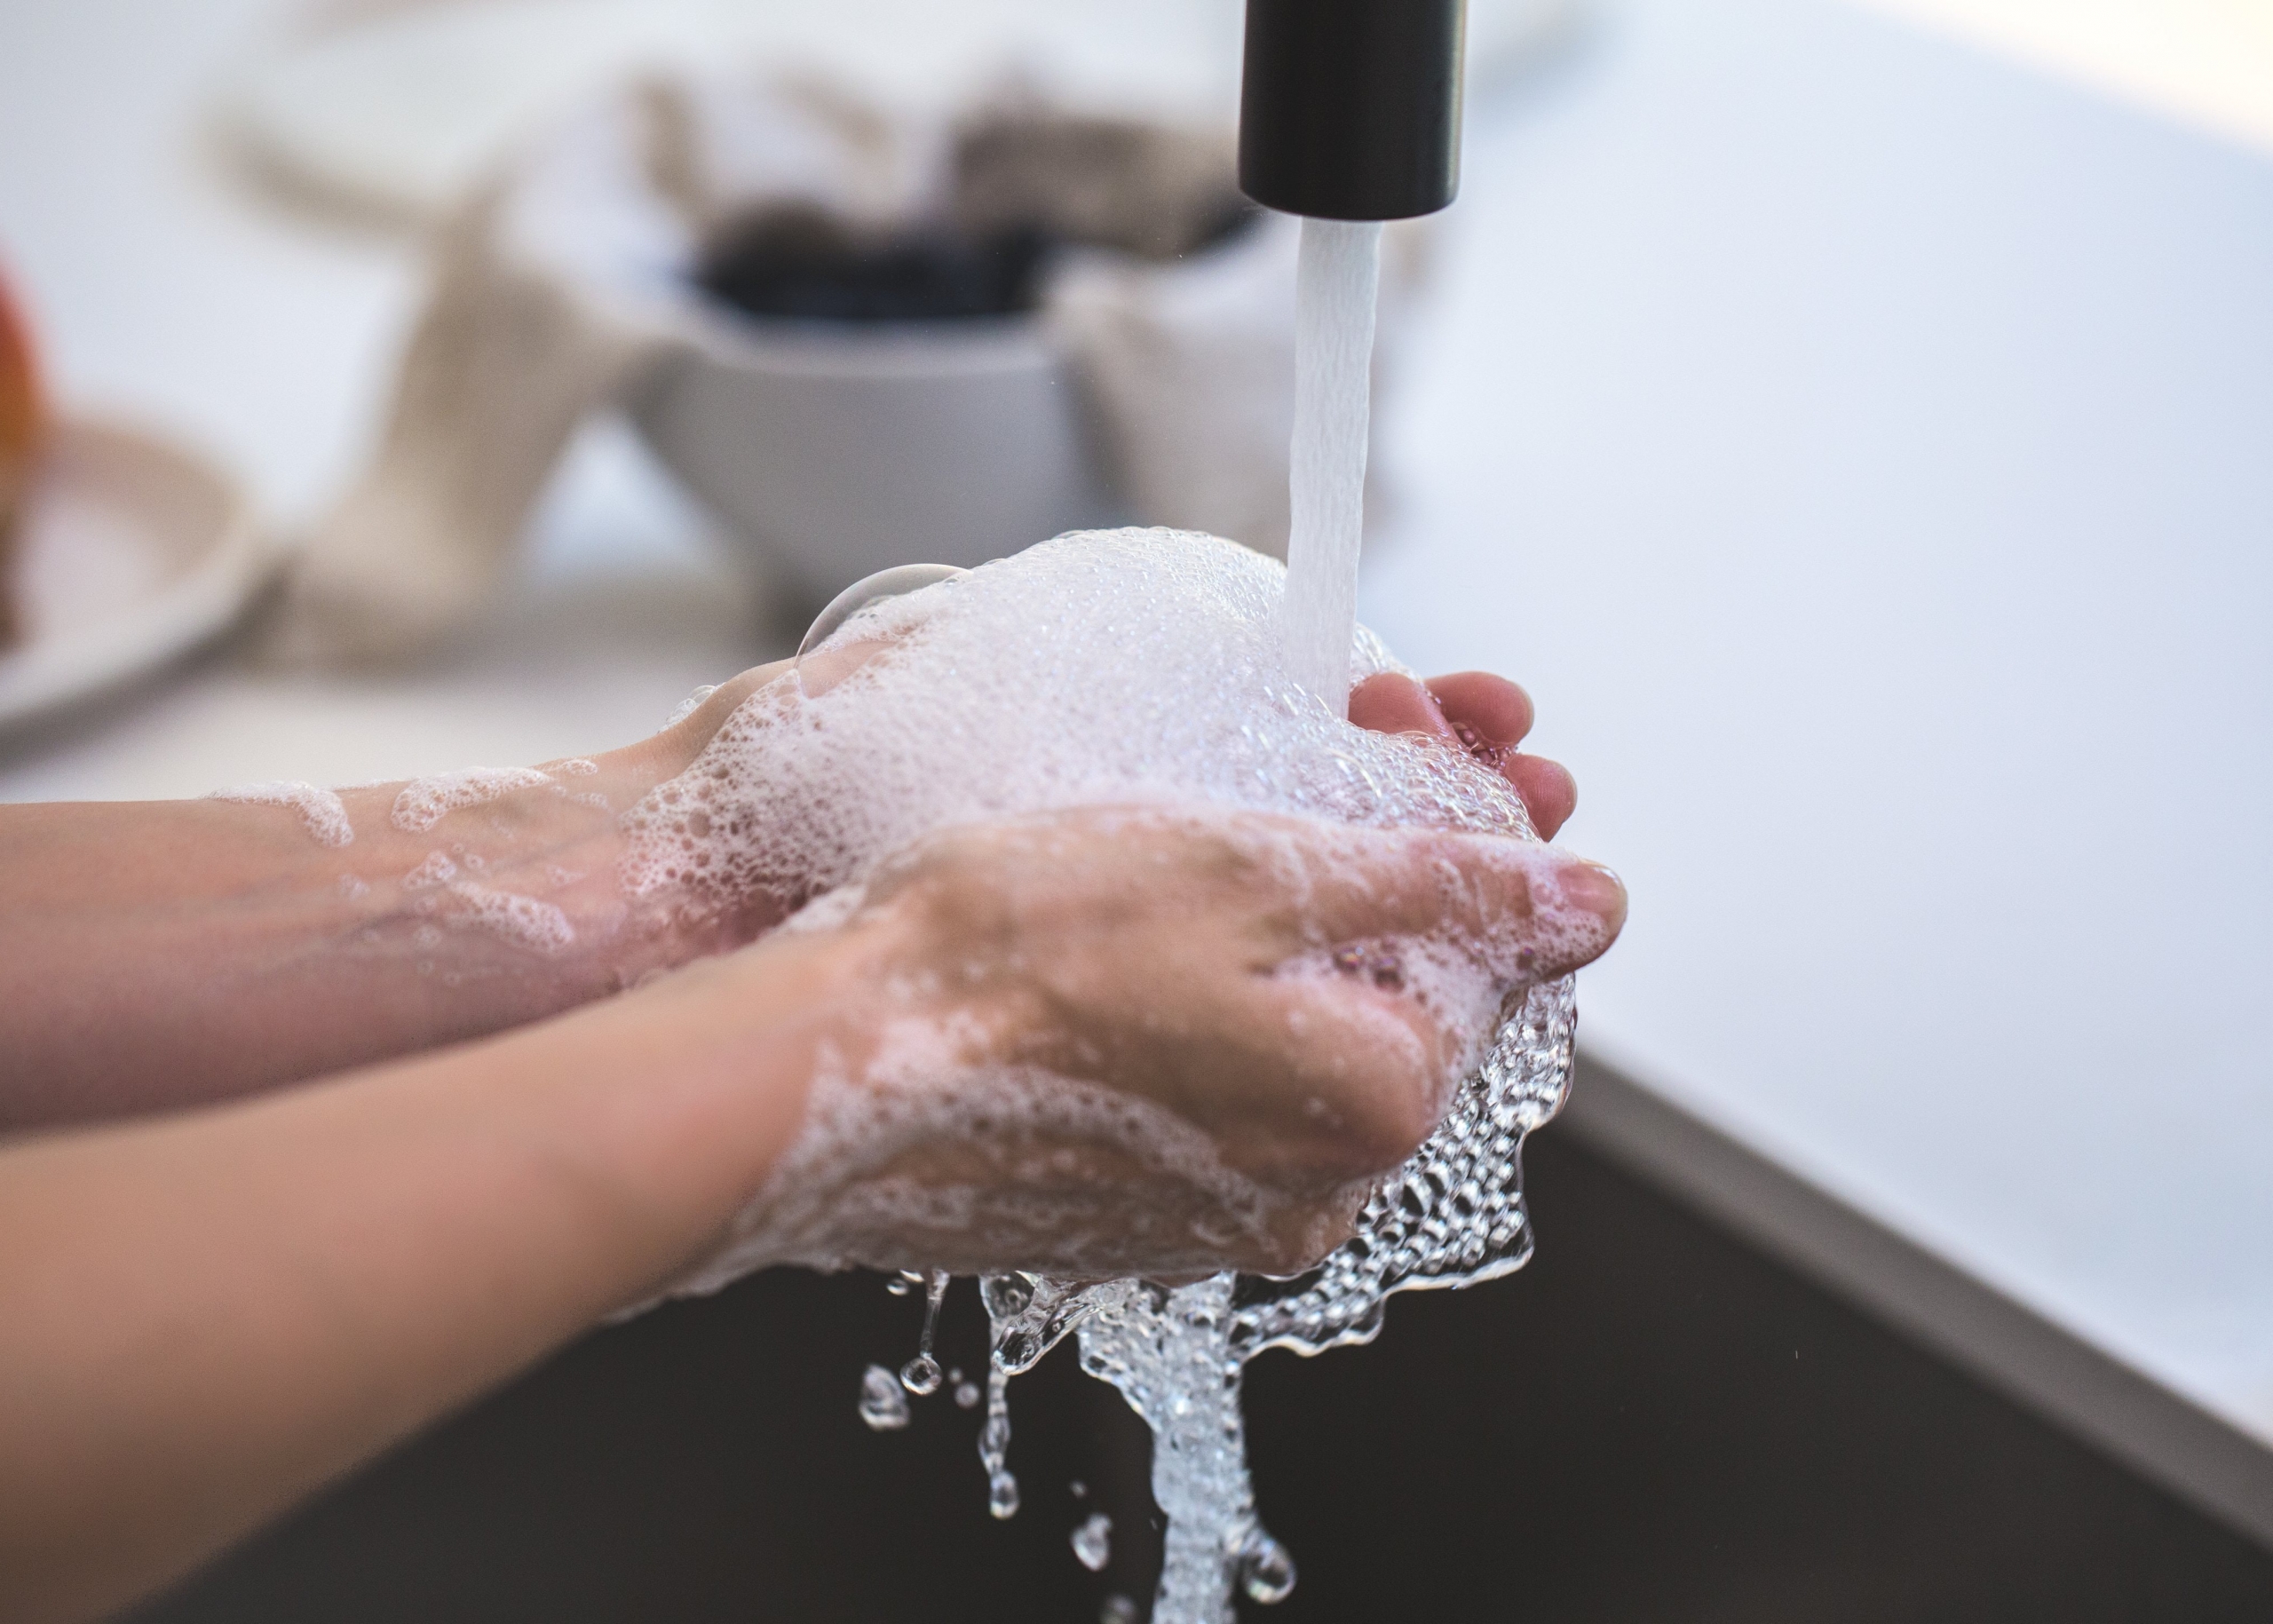 Hand washing - Coronavirus